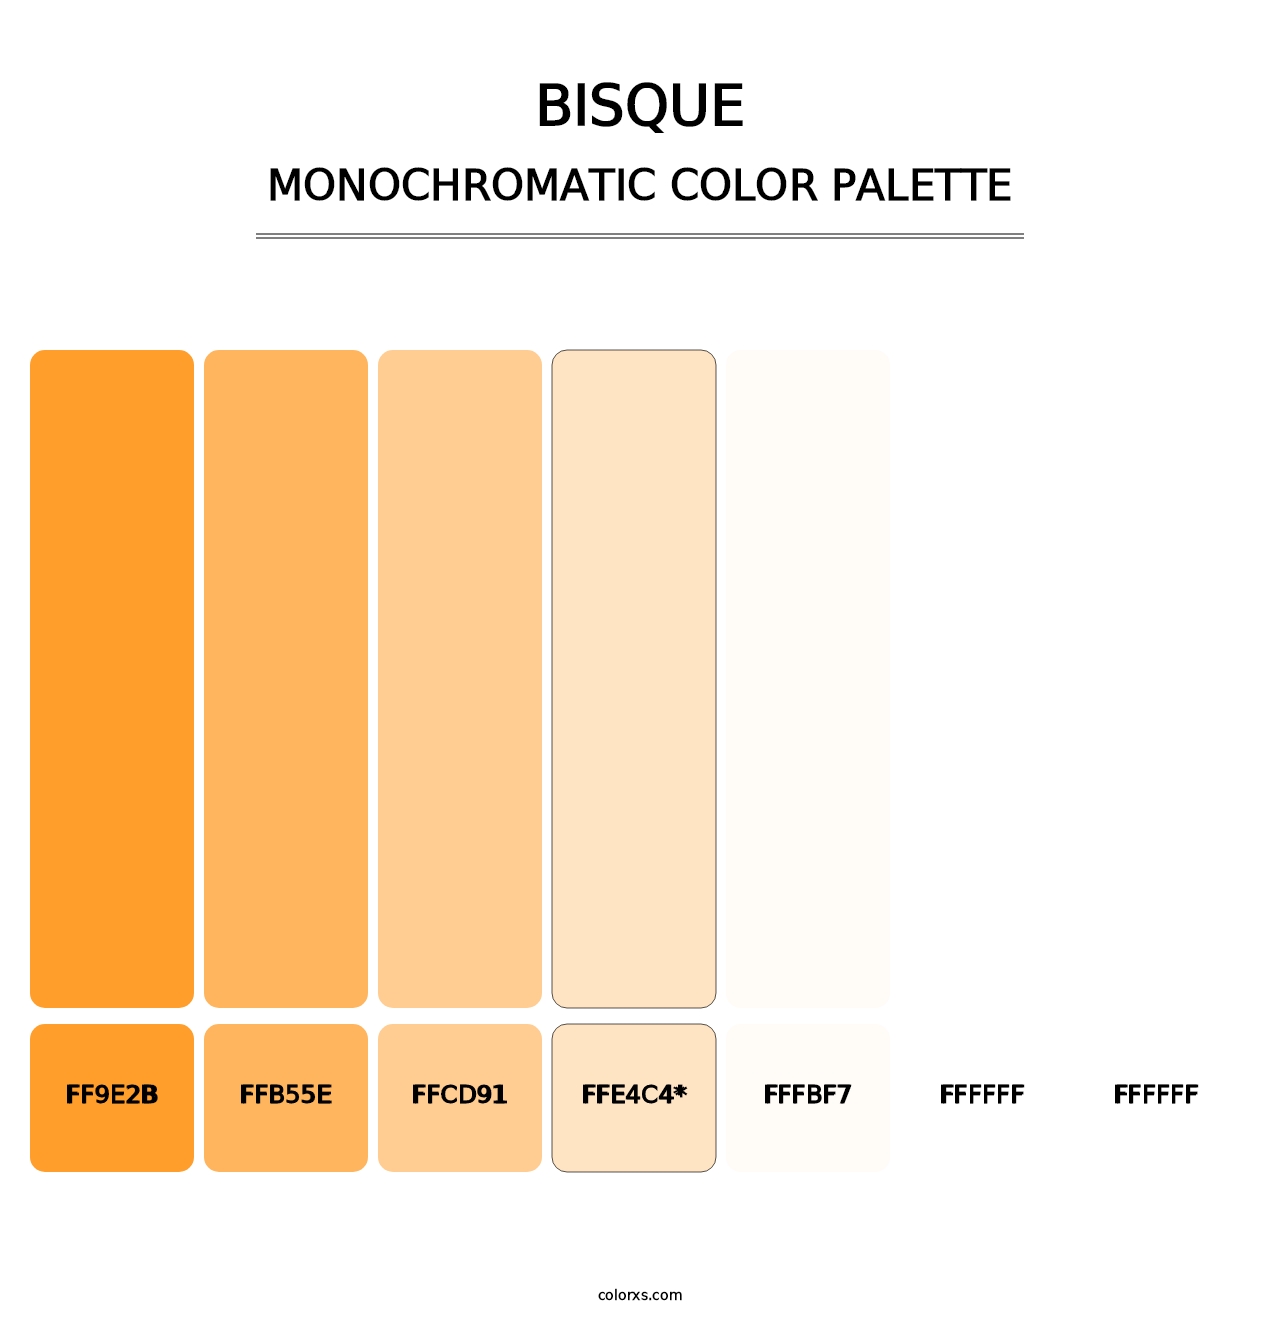 Bisque - Monochromatic Color Palette